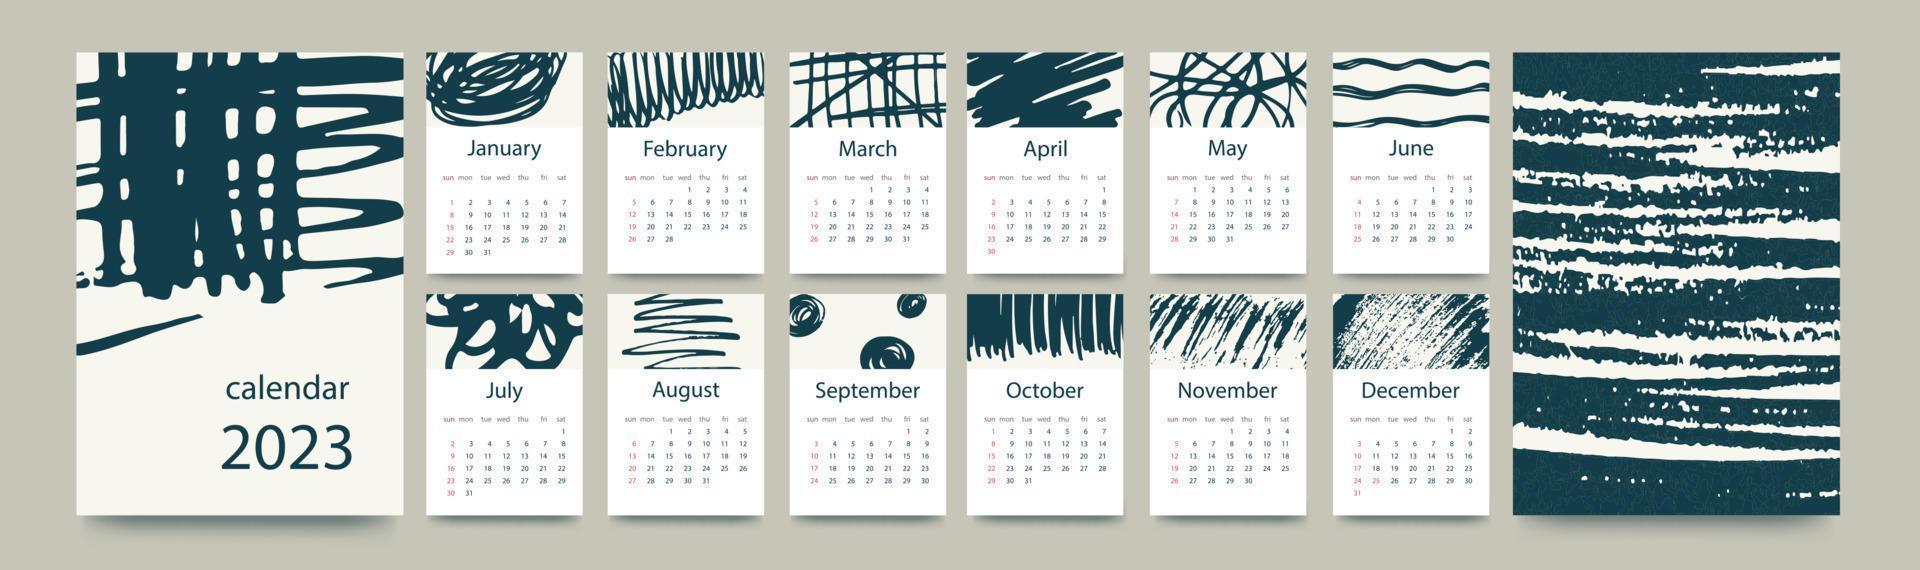 kalendersjabloon voor 2023. verticaal ontwerp met met abstracte hand getrokken doodles. bewerkbare paginasjabloon met a4 illustraties, set van 12 maanden met omslagen. vectorillustratie. vector